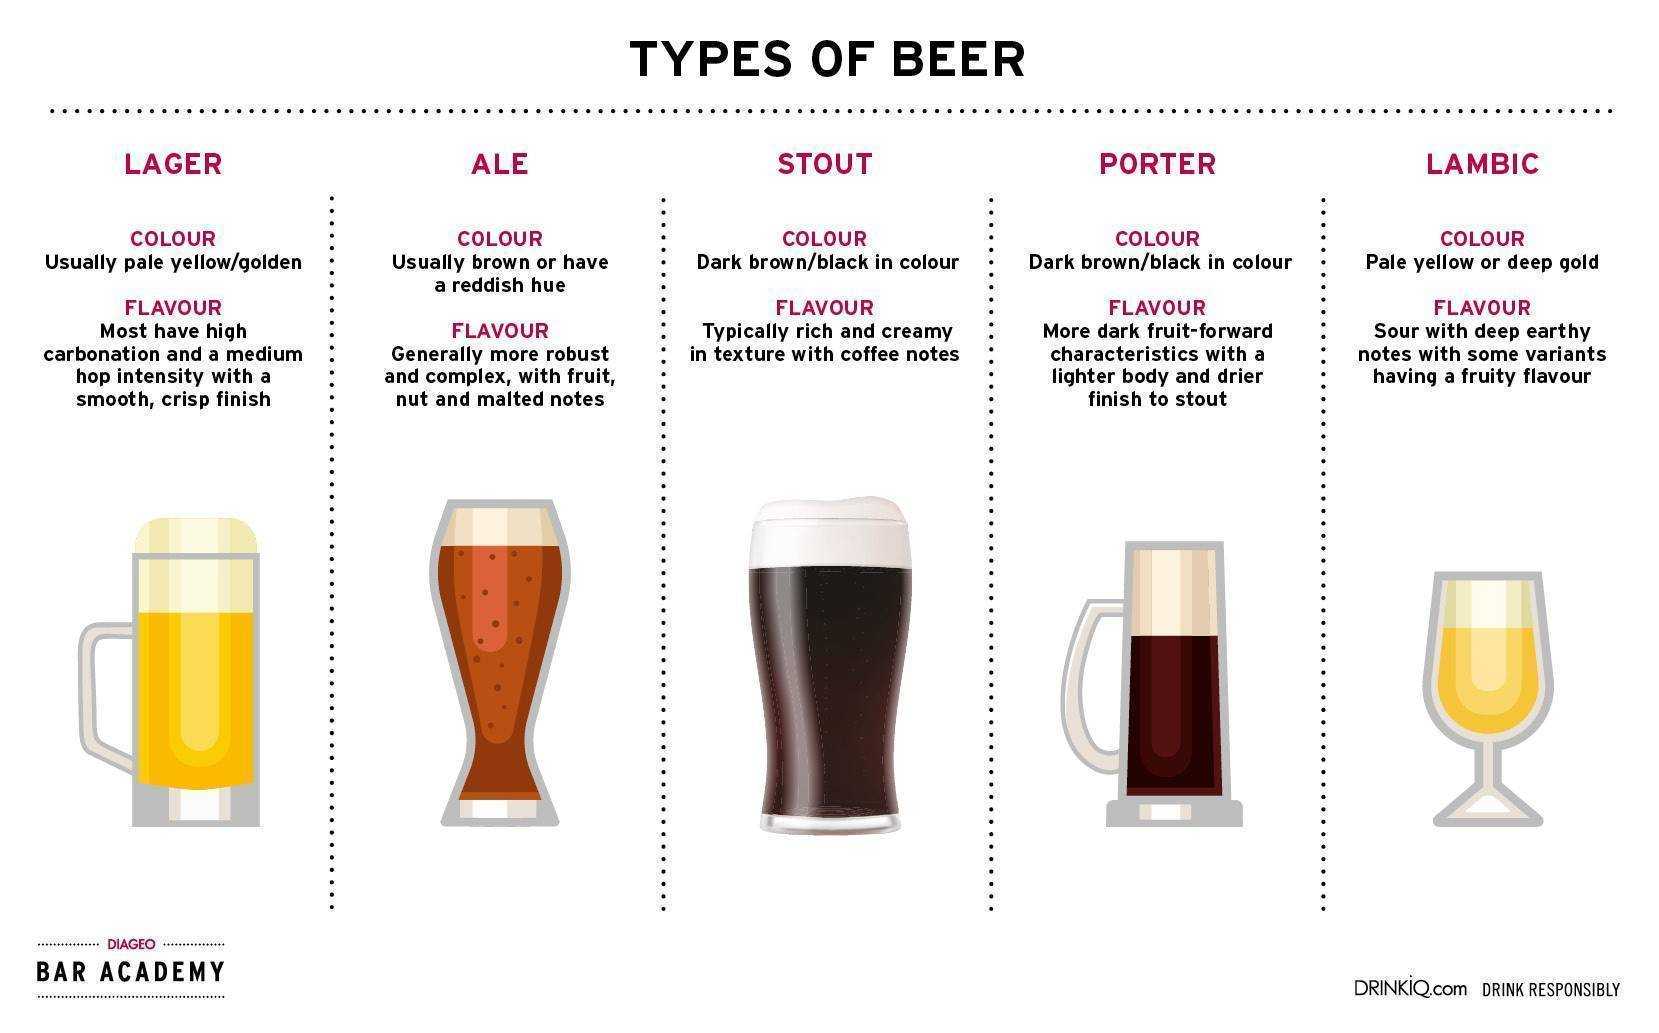 Что значит ipa (india pale ale) в пиве? описание сорта, стиля и марки пива ипа